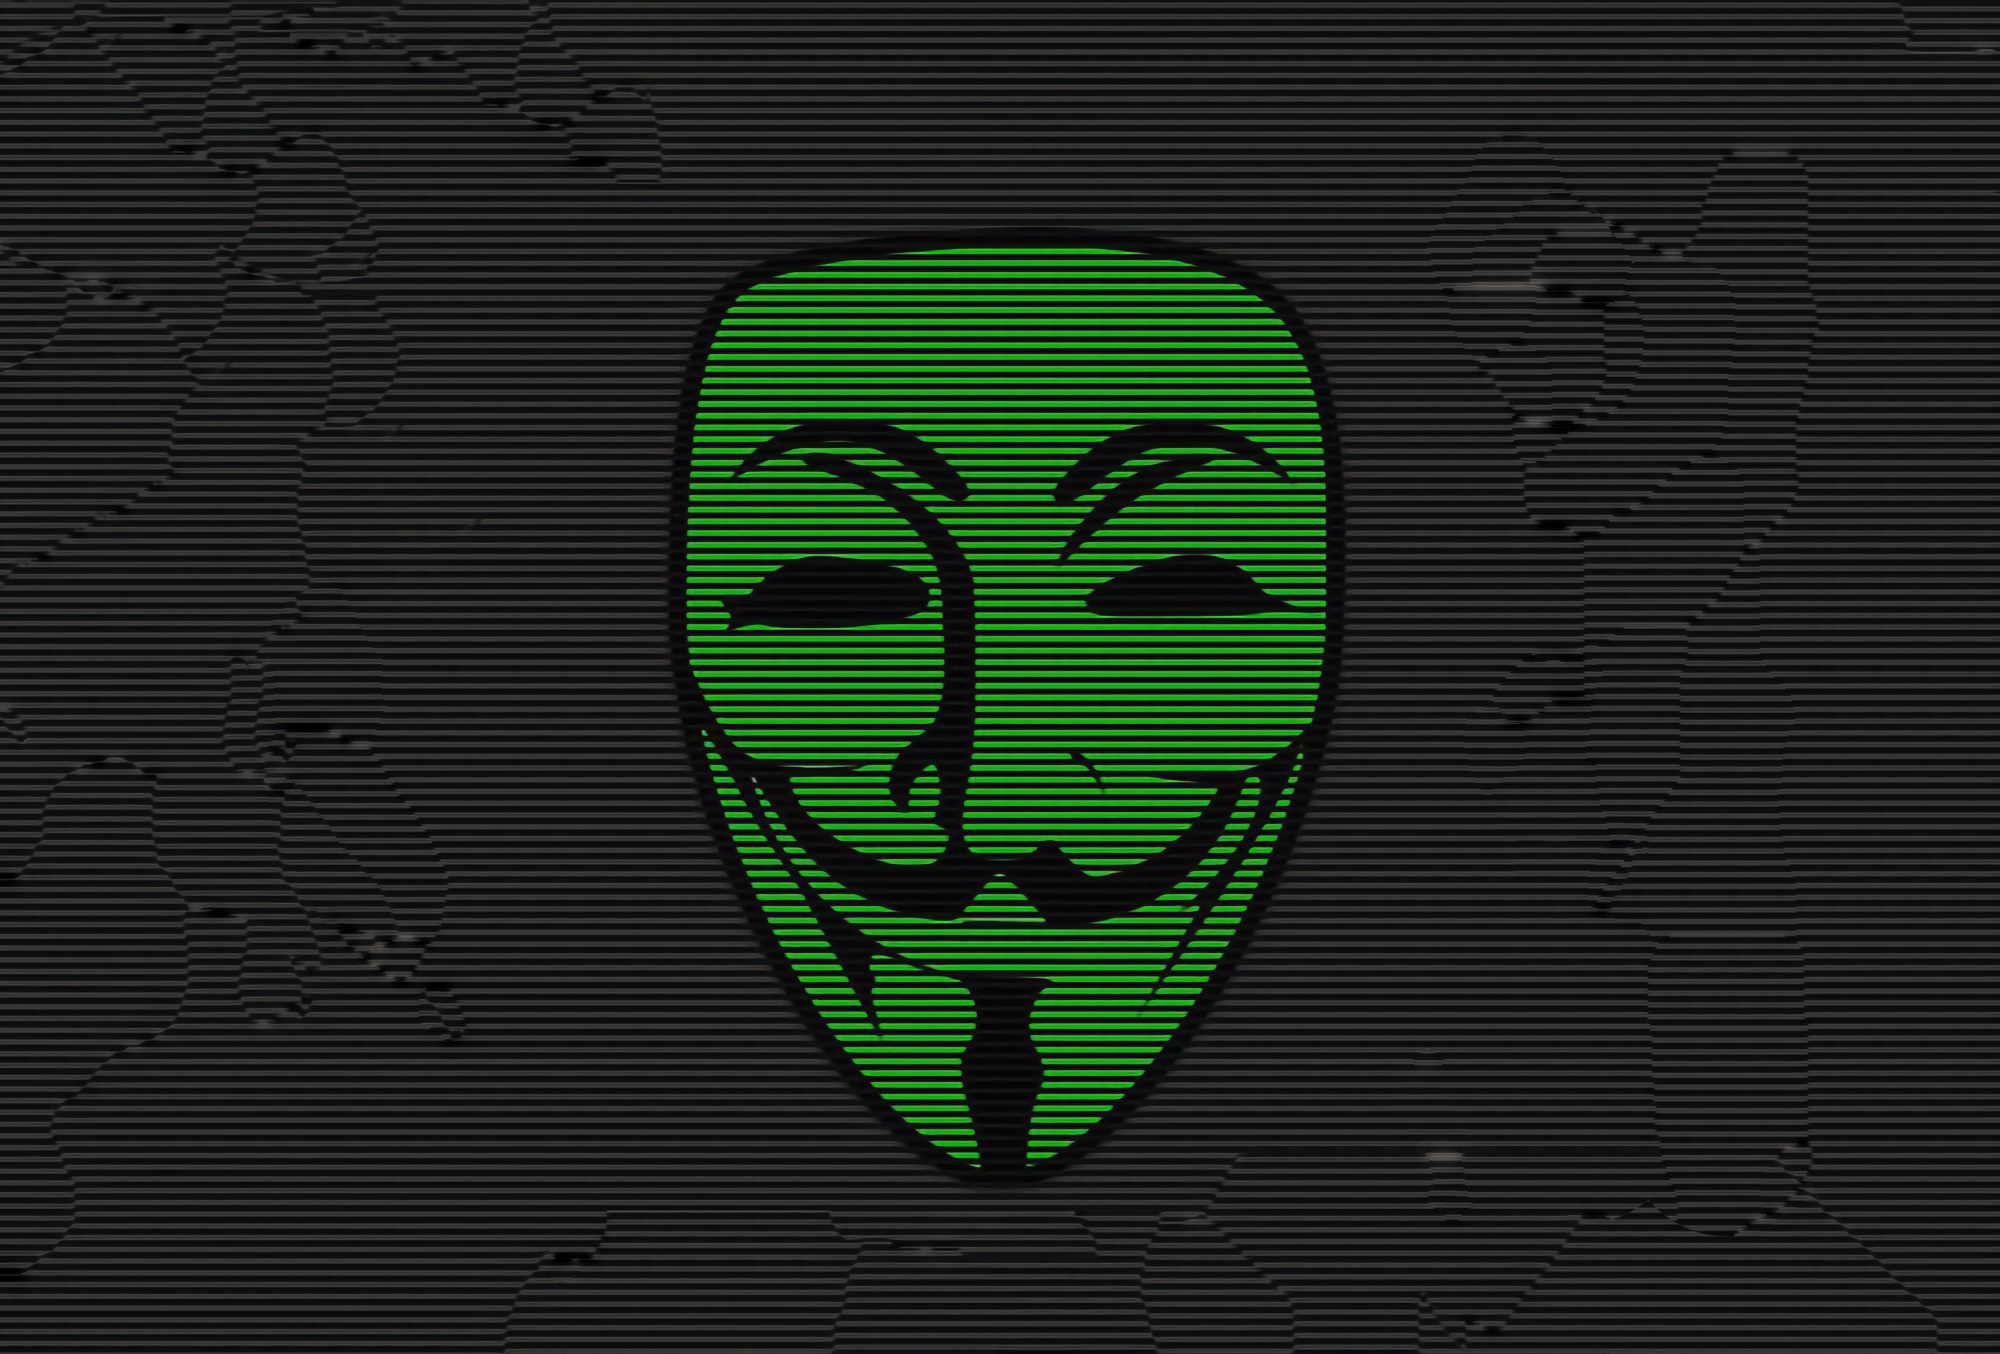 Anonymous зламали сервер заводу в росії, який випускає компоненти для зенітно-ракетних установок